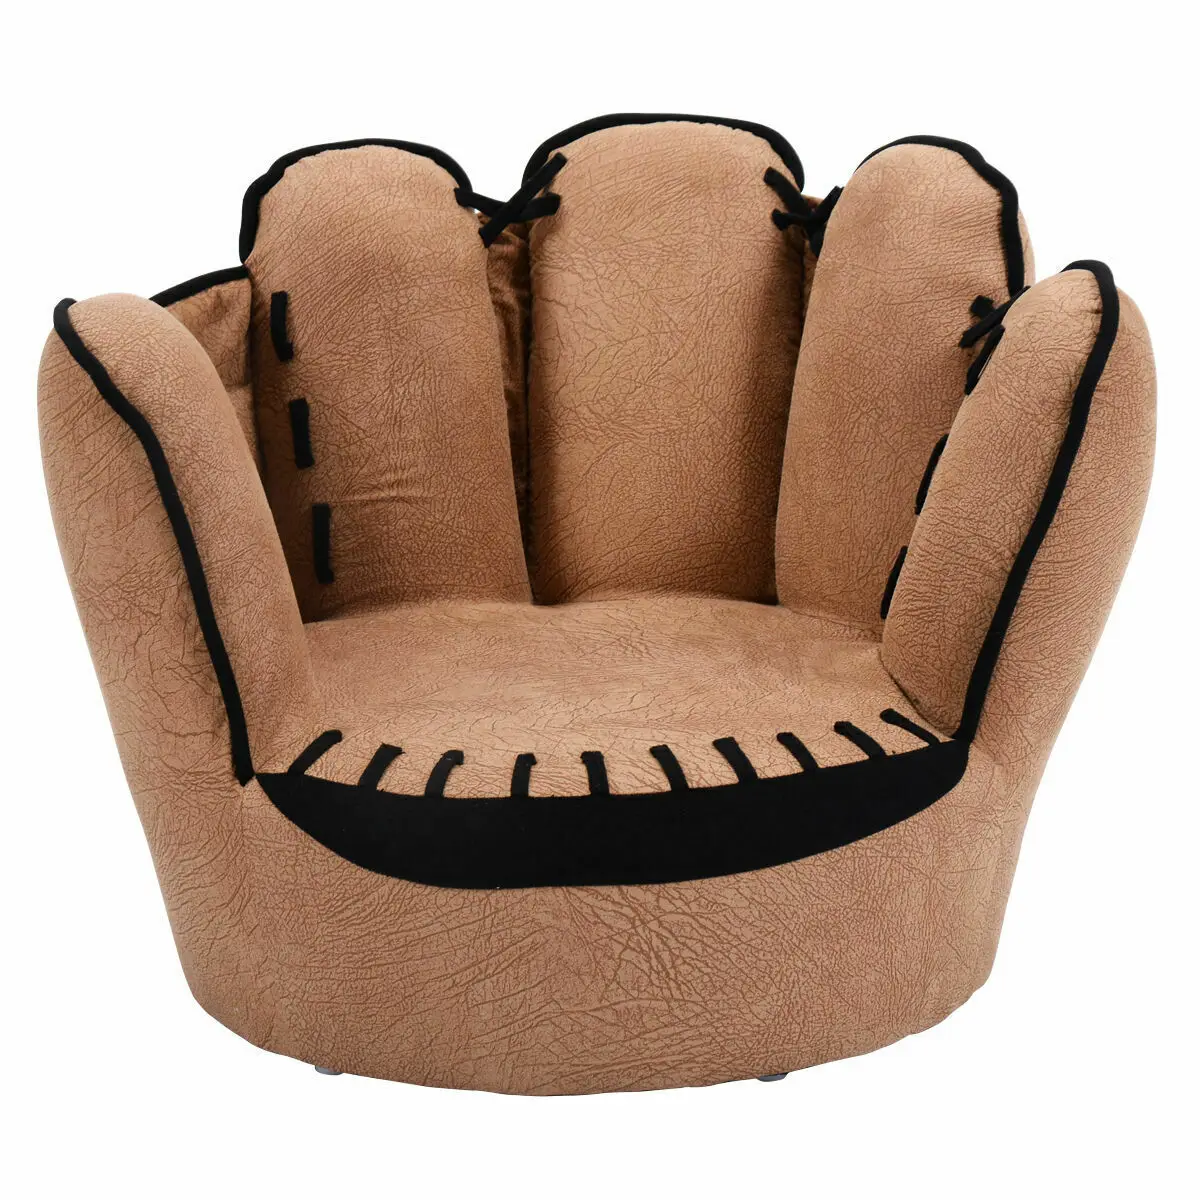 Kids Sofa Five Finger Armrest Chair Couch Children Living Room Toddler Gift  HW54191